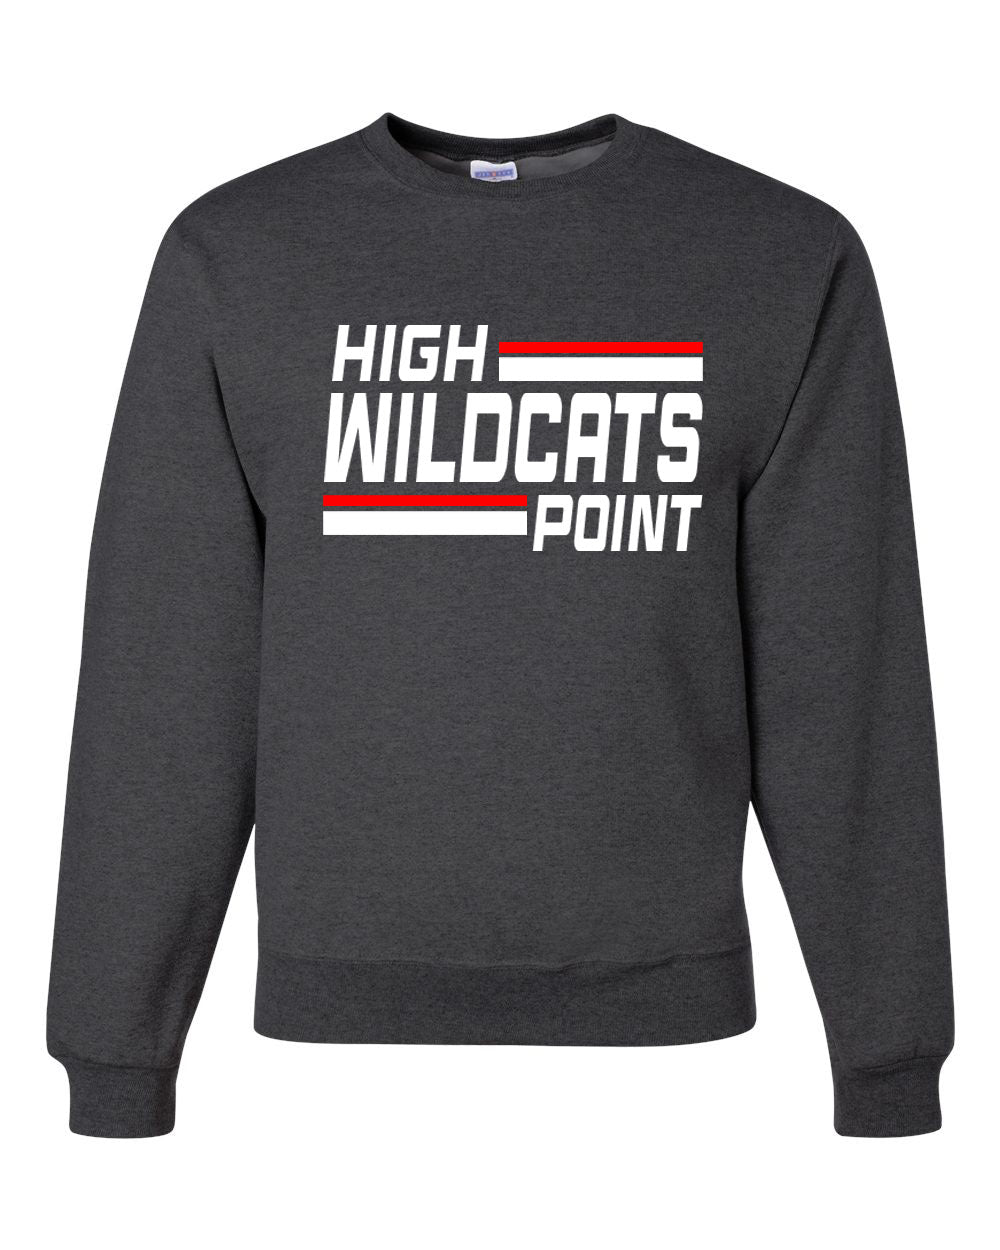 Wildcats Cheer Design 4 non hooded sweatshirt